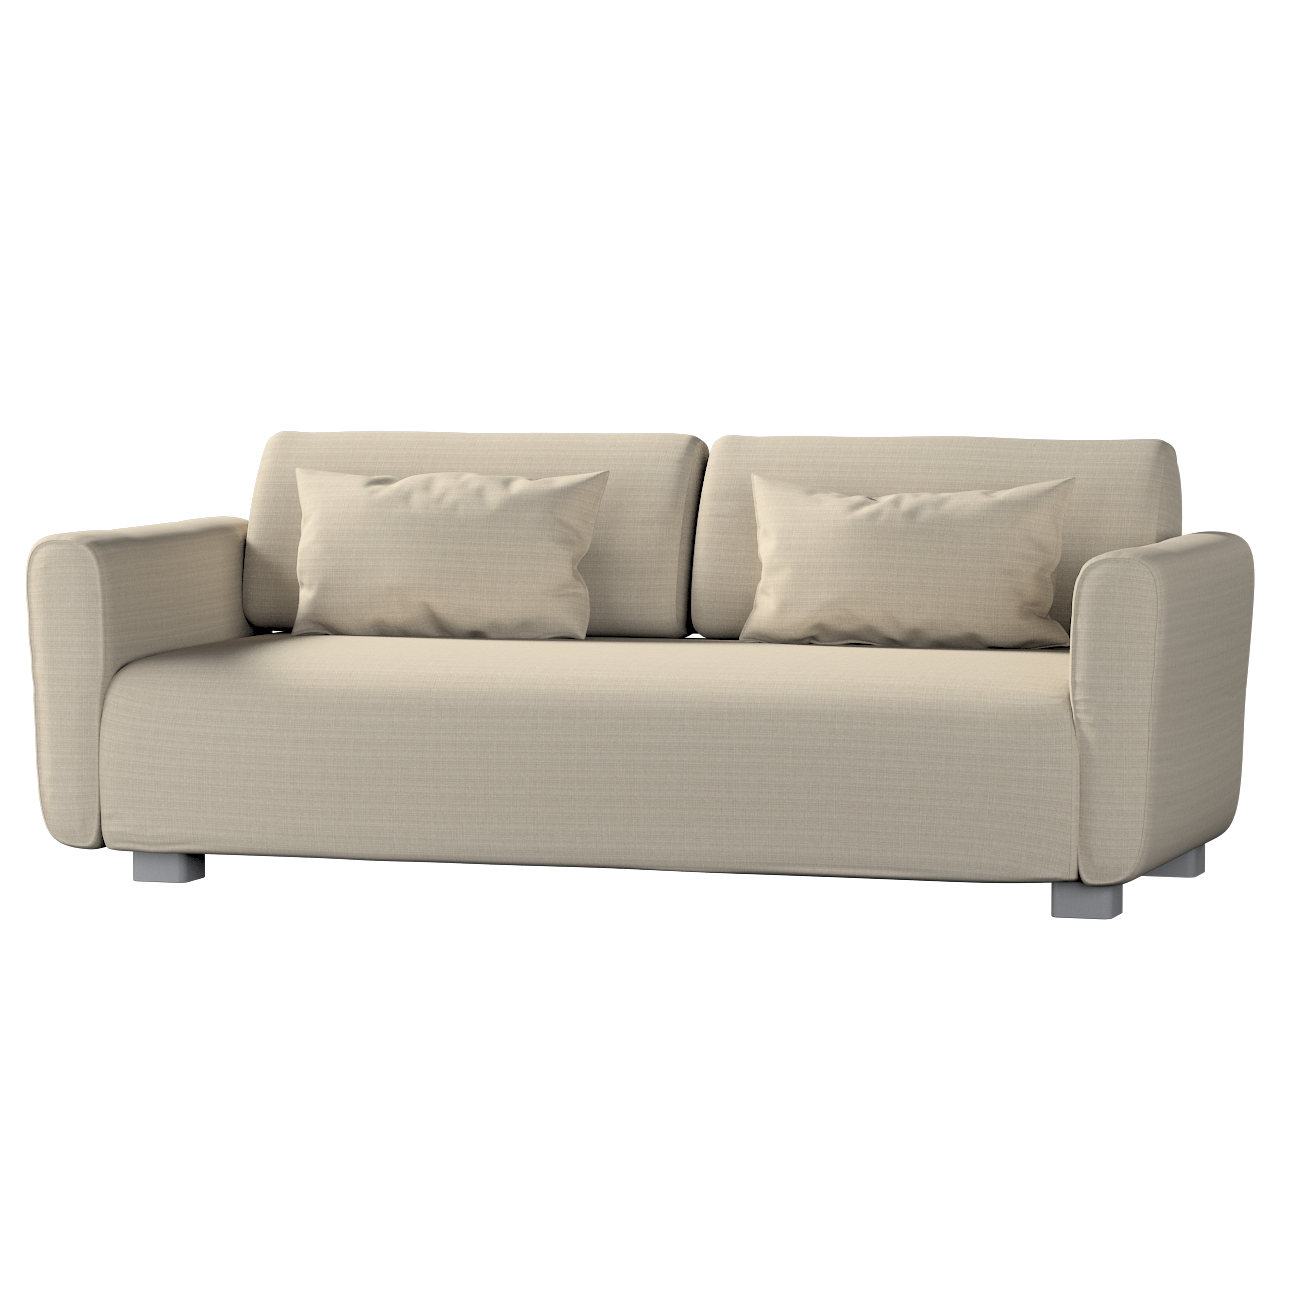 Bezug für Mysinge 2-Sitzer Sofa, beige, Sofabezug Mysinge 2-Sitzer, Living günstig online kaufen